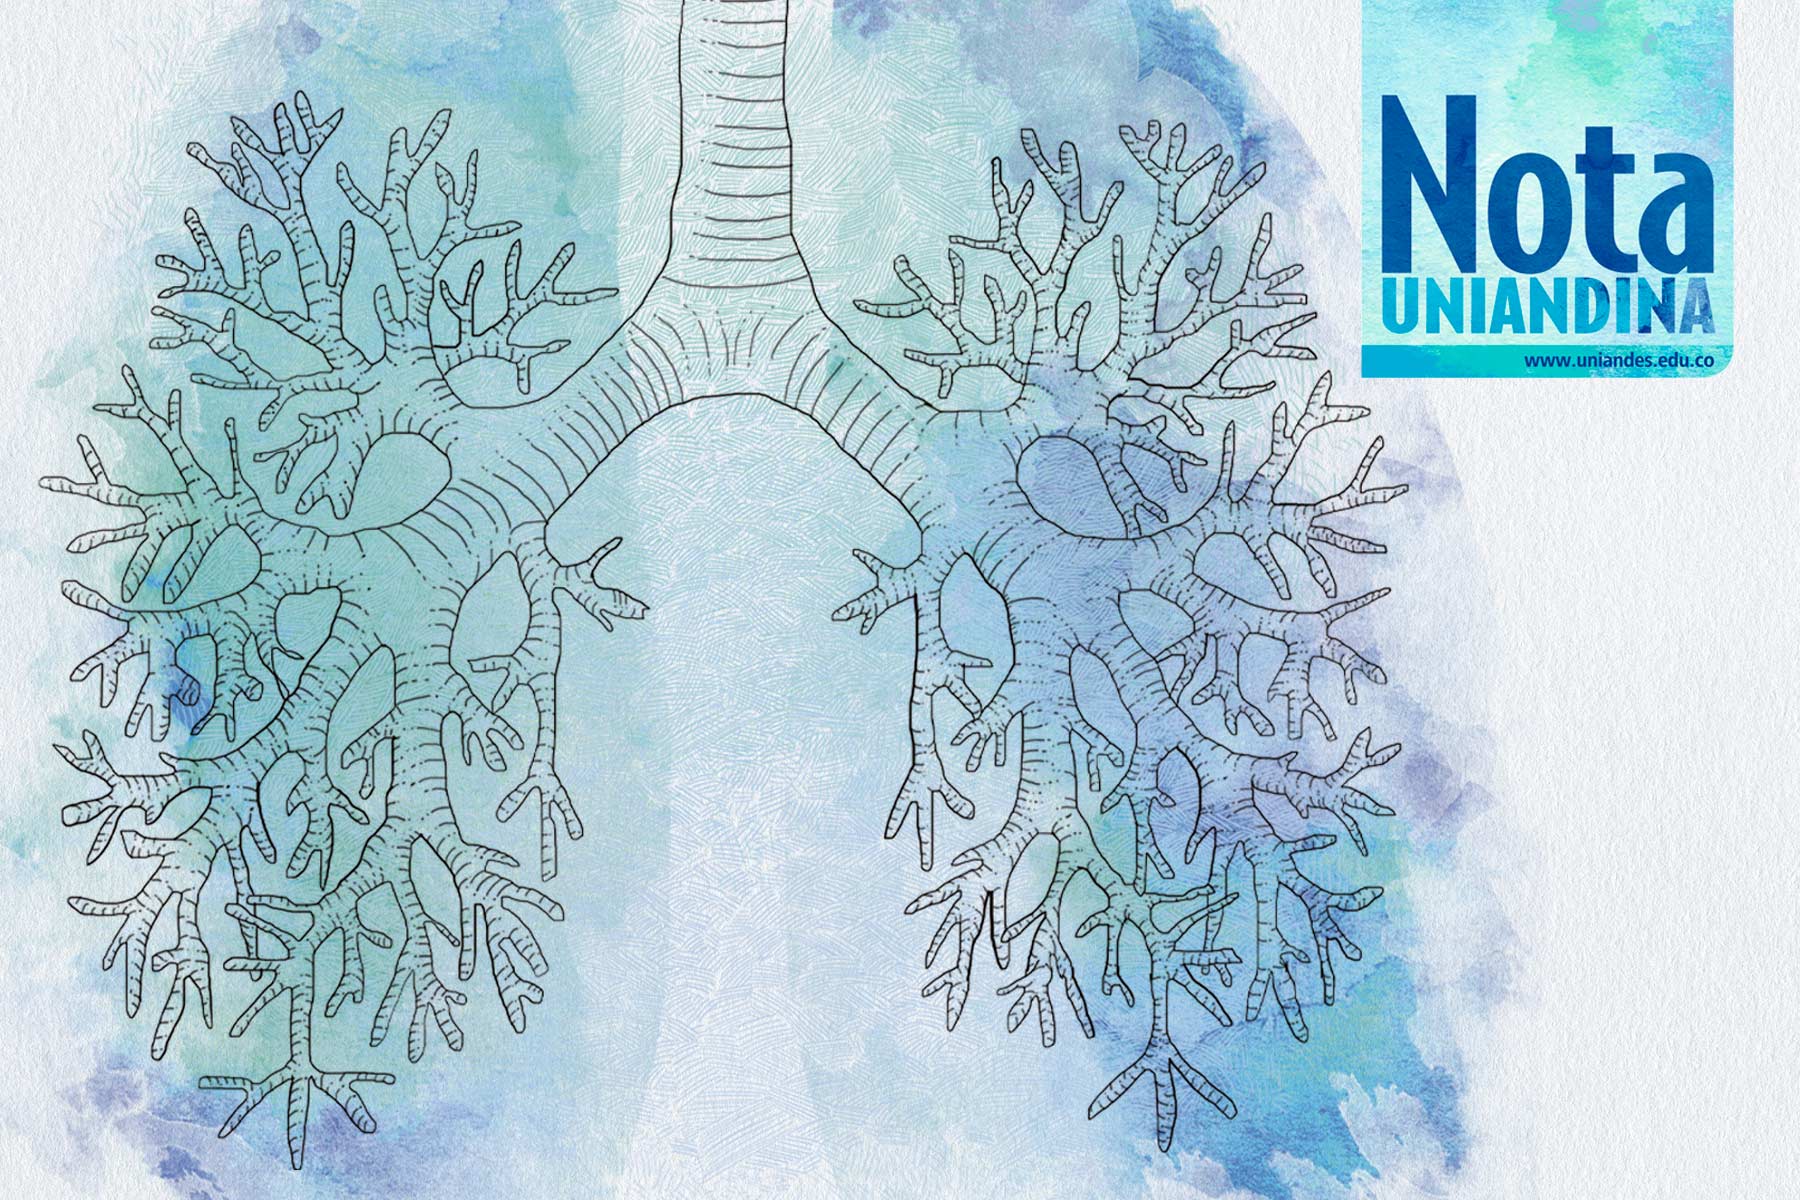 Portada de la Nota Uniandina 55. Ilustración de un pulmón en acuarela.